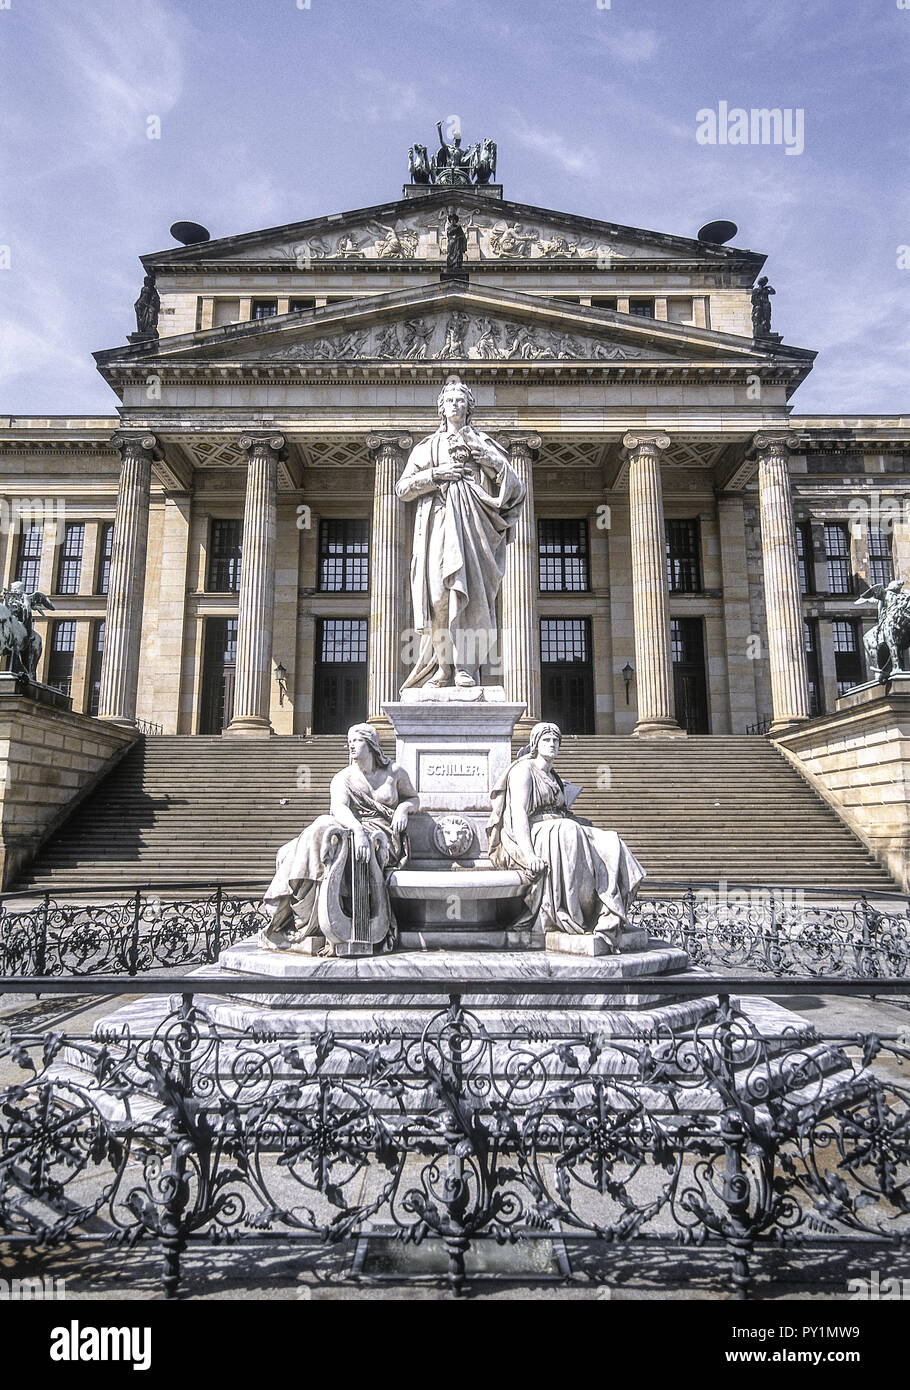 Konzerthaus am Gendarmenmarkt, Schiller-Denkmal, Berlín, Alemania Foto de stock